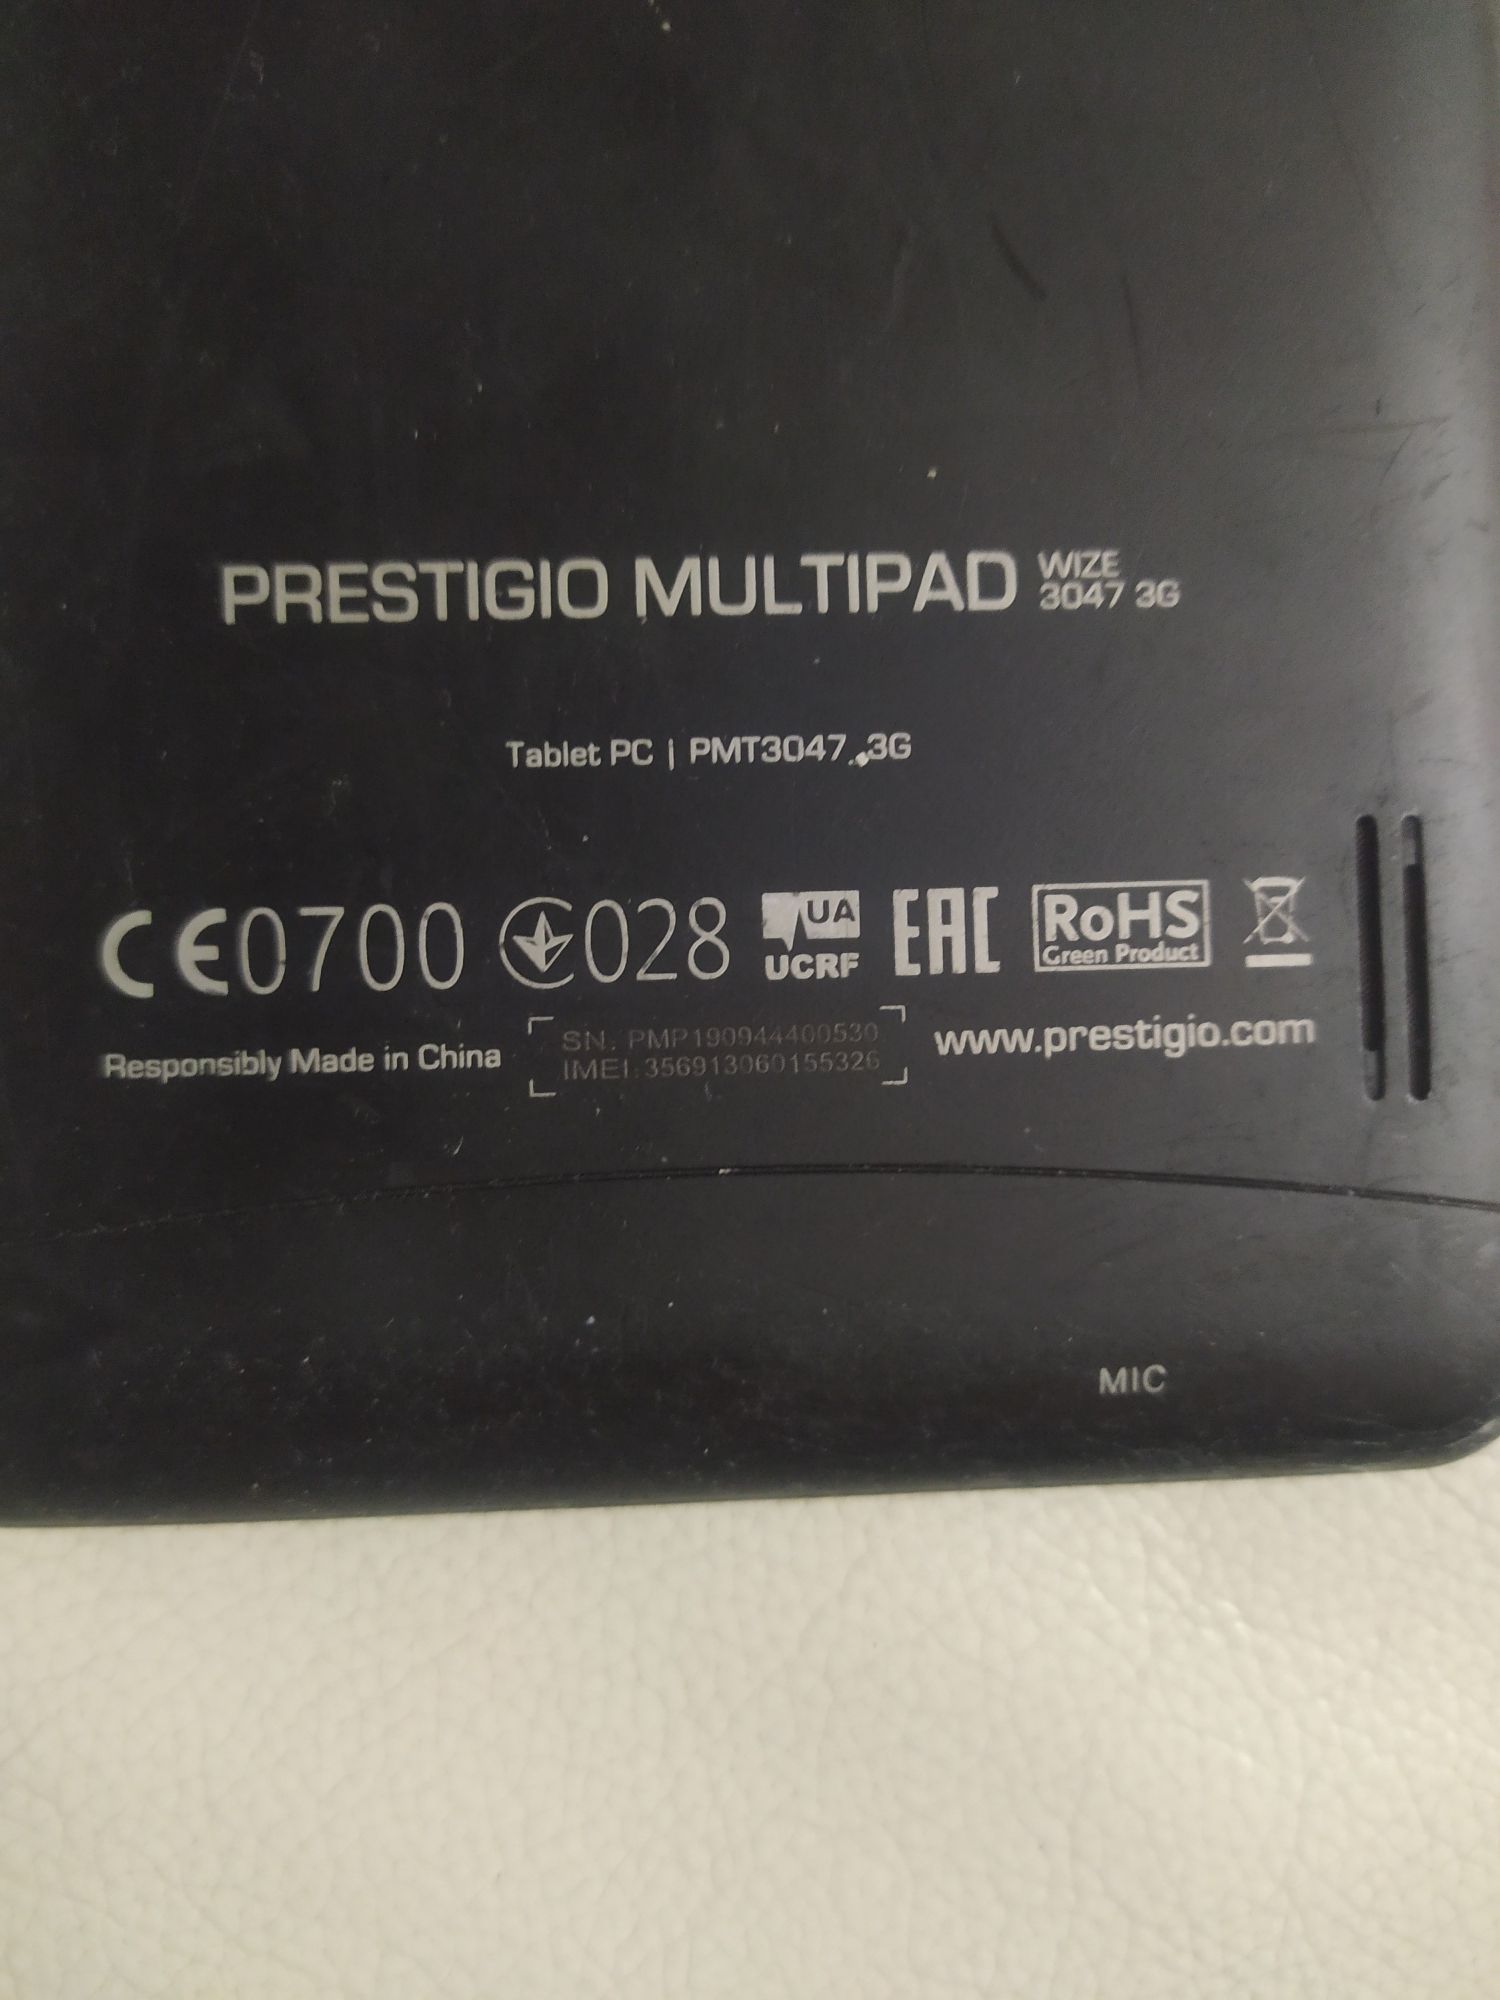 Prestigio Multipad wize 3047 3G